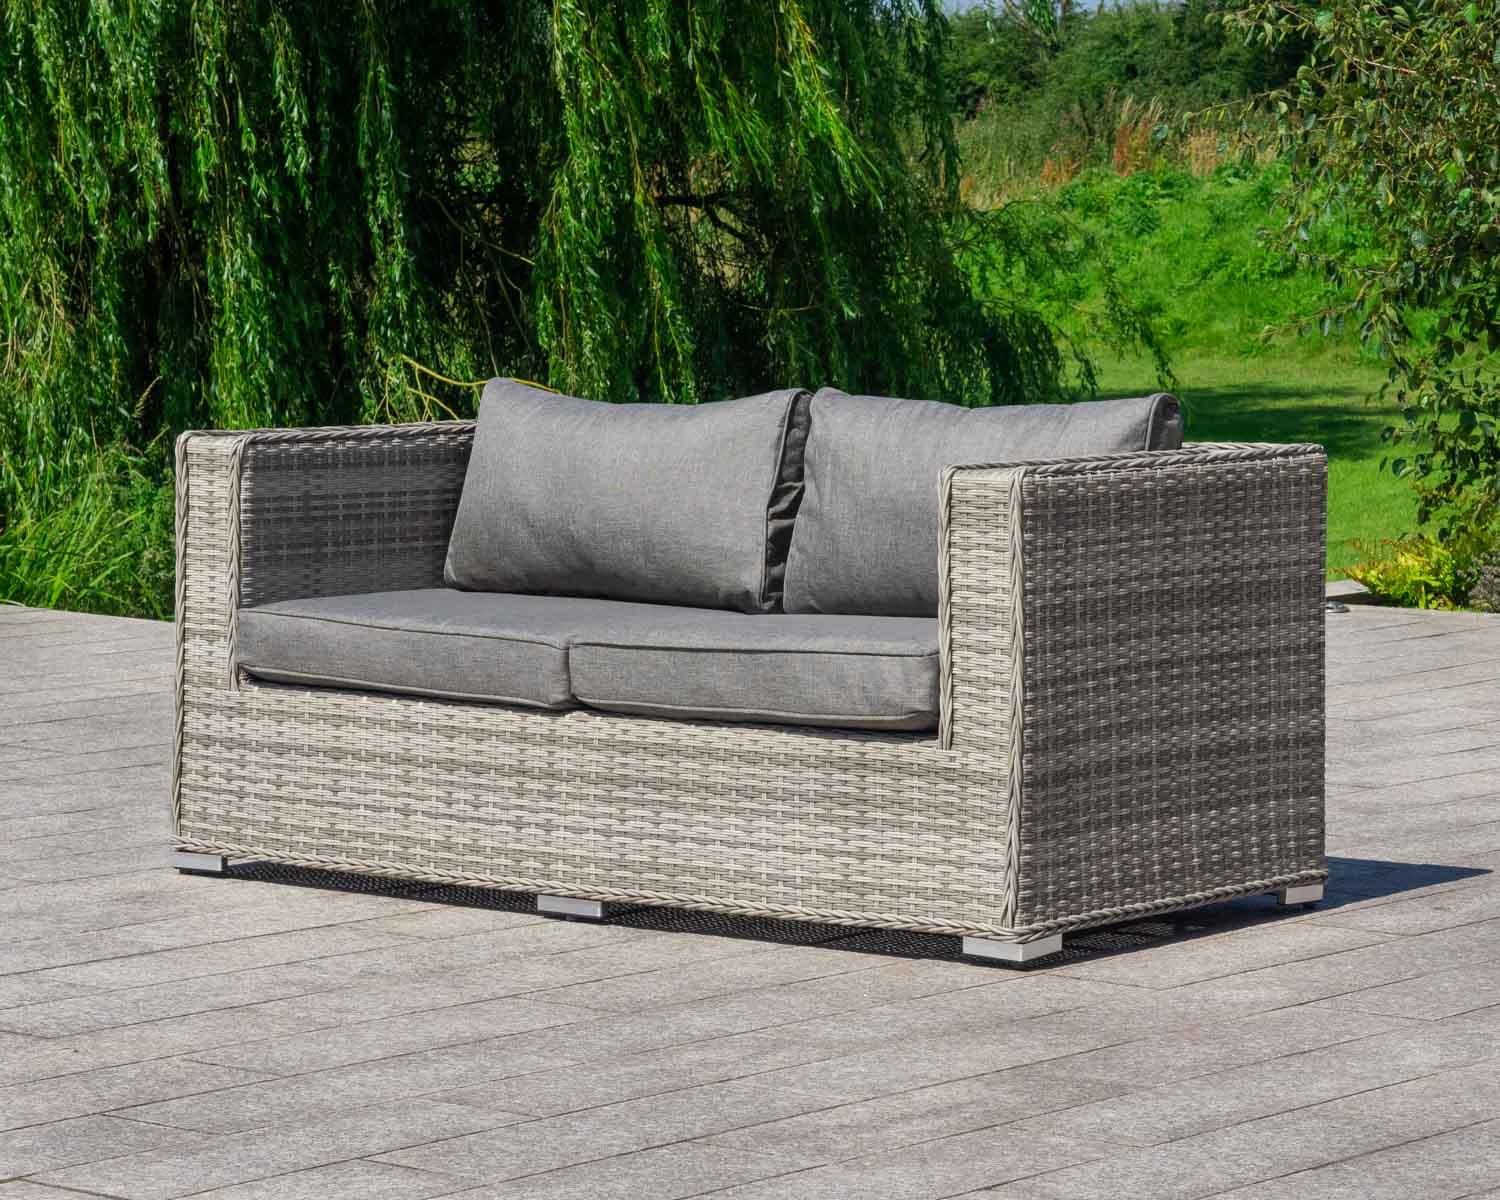 2 Seat Rattan Garden Sofa in Grey - Ascot - Rattan Garden Furniture ...